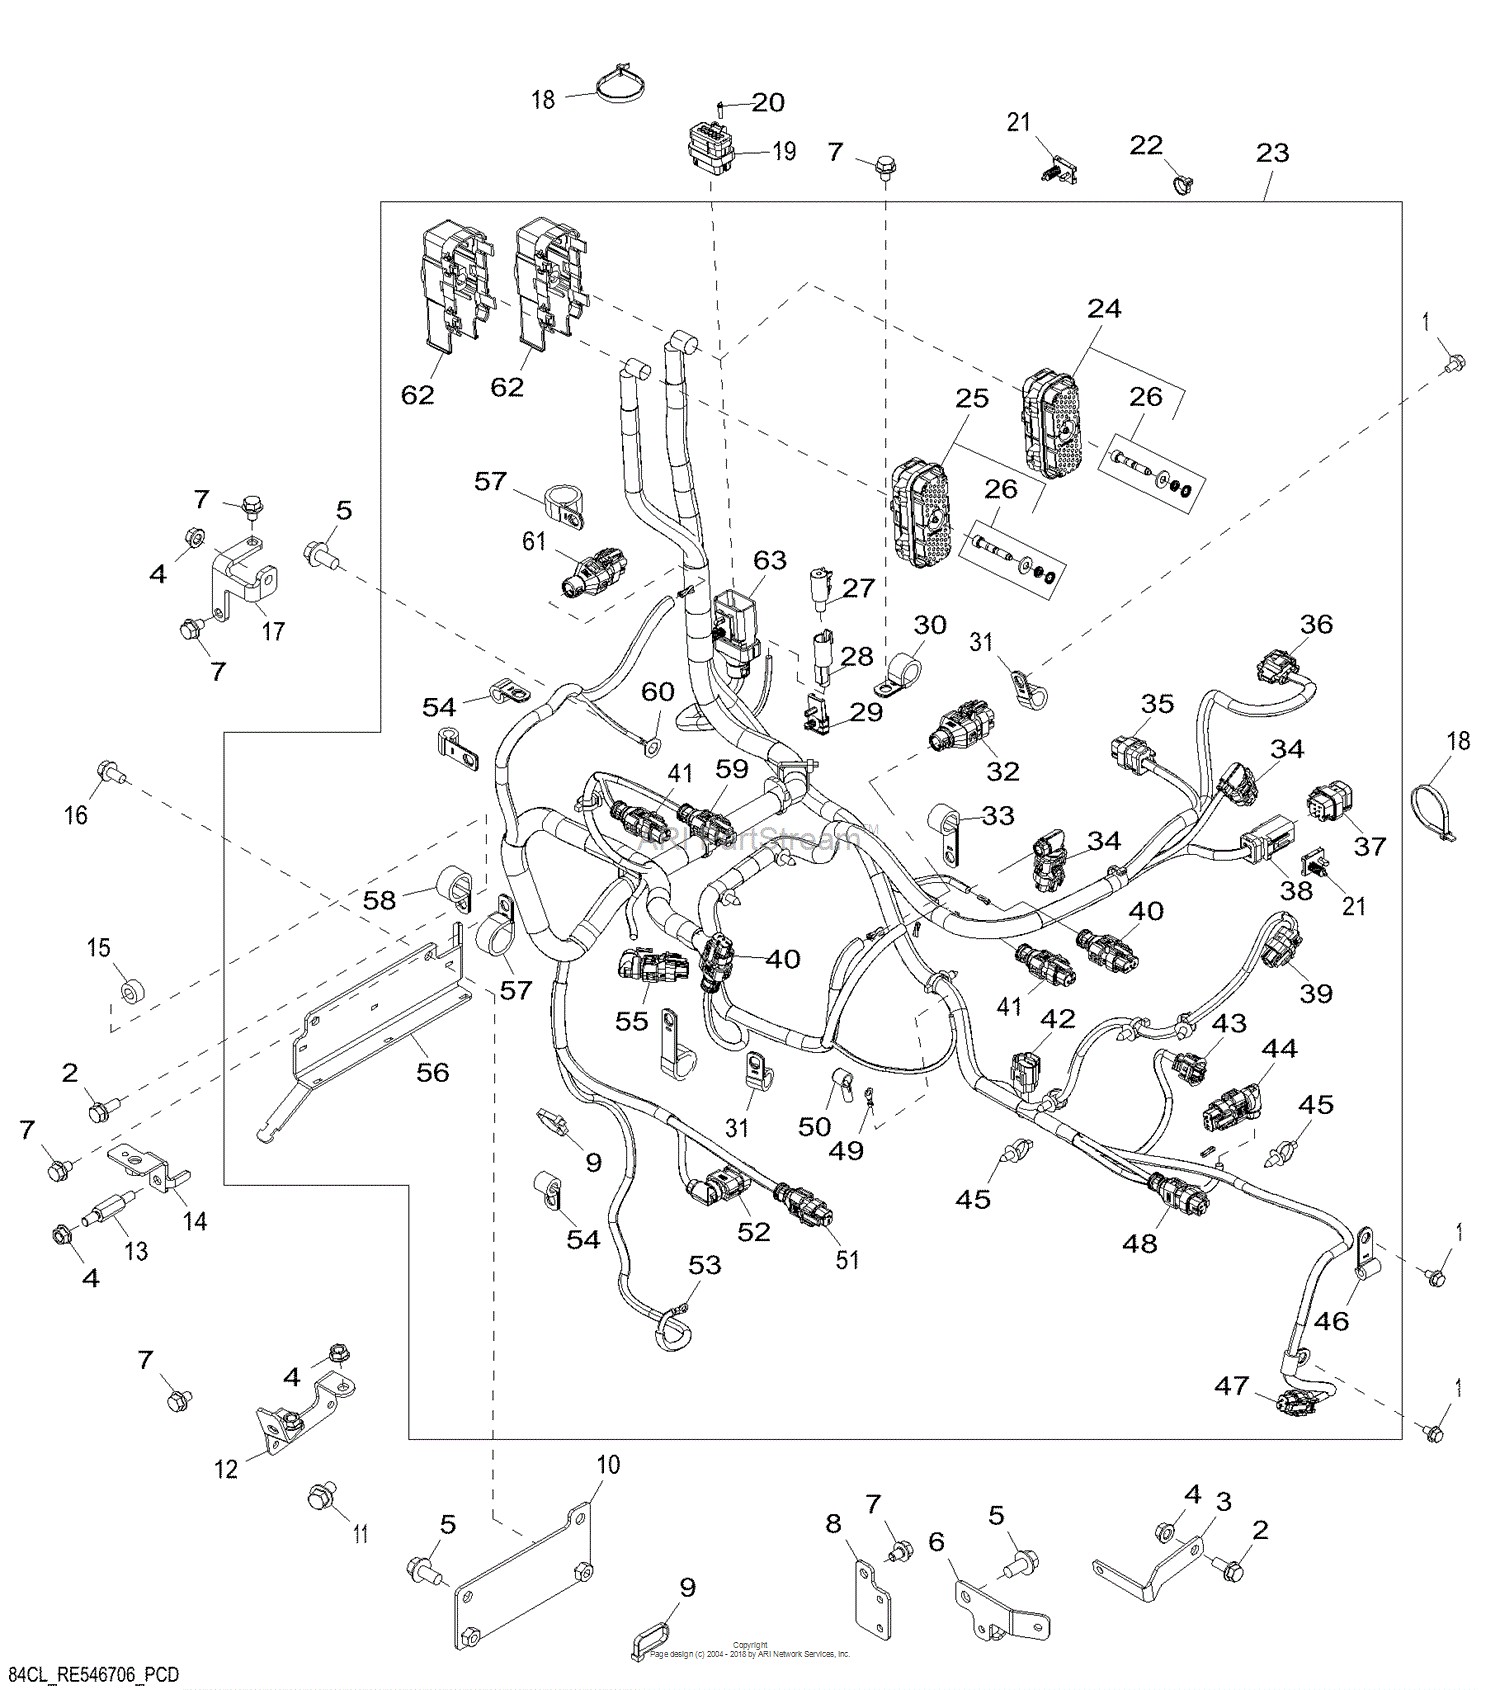 John Deere F725 Parts Diagram